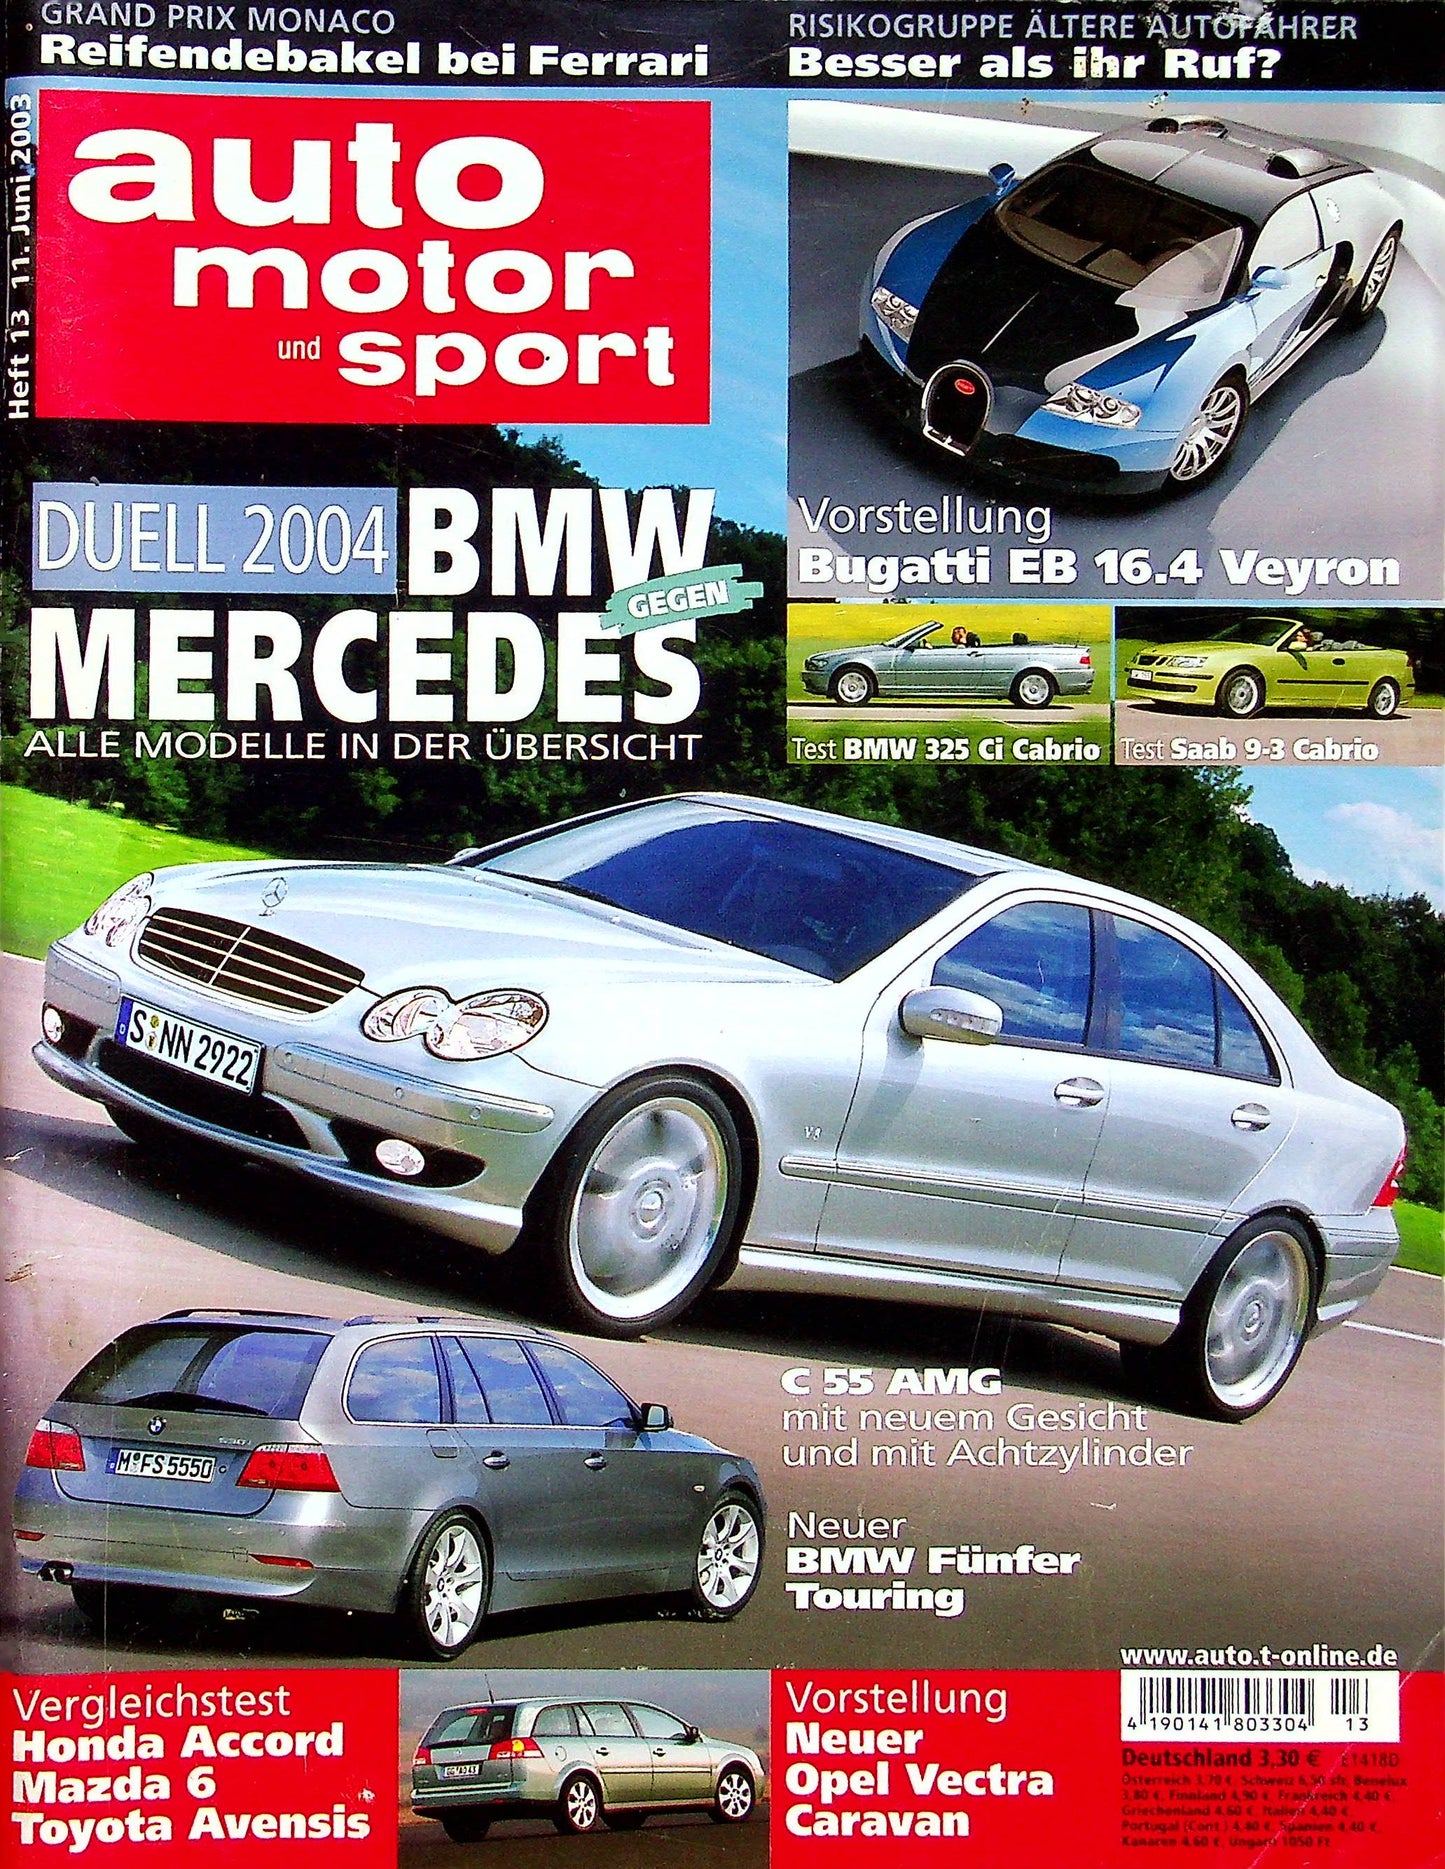 Auto Motor und Sport 13/2003